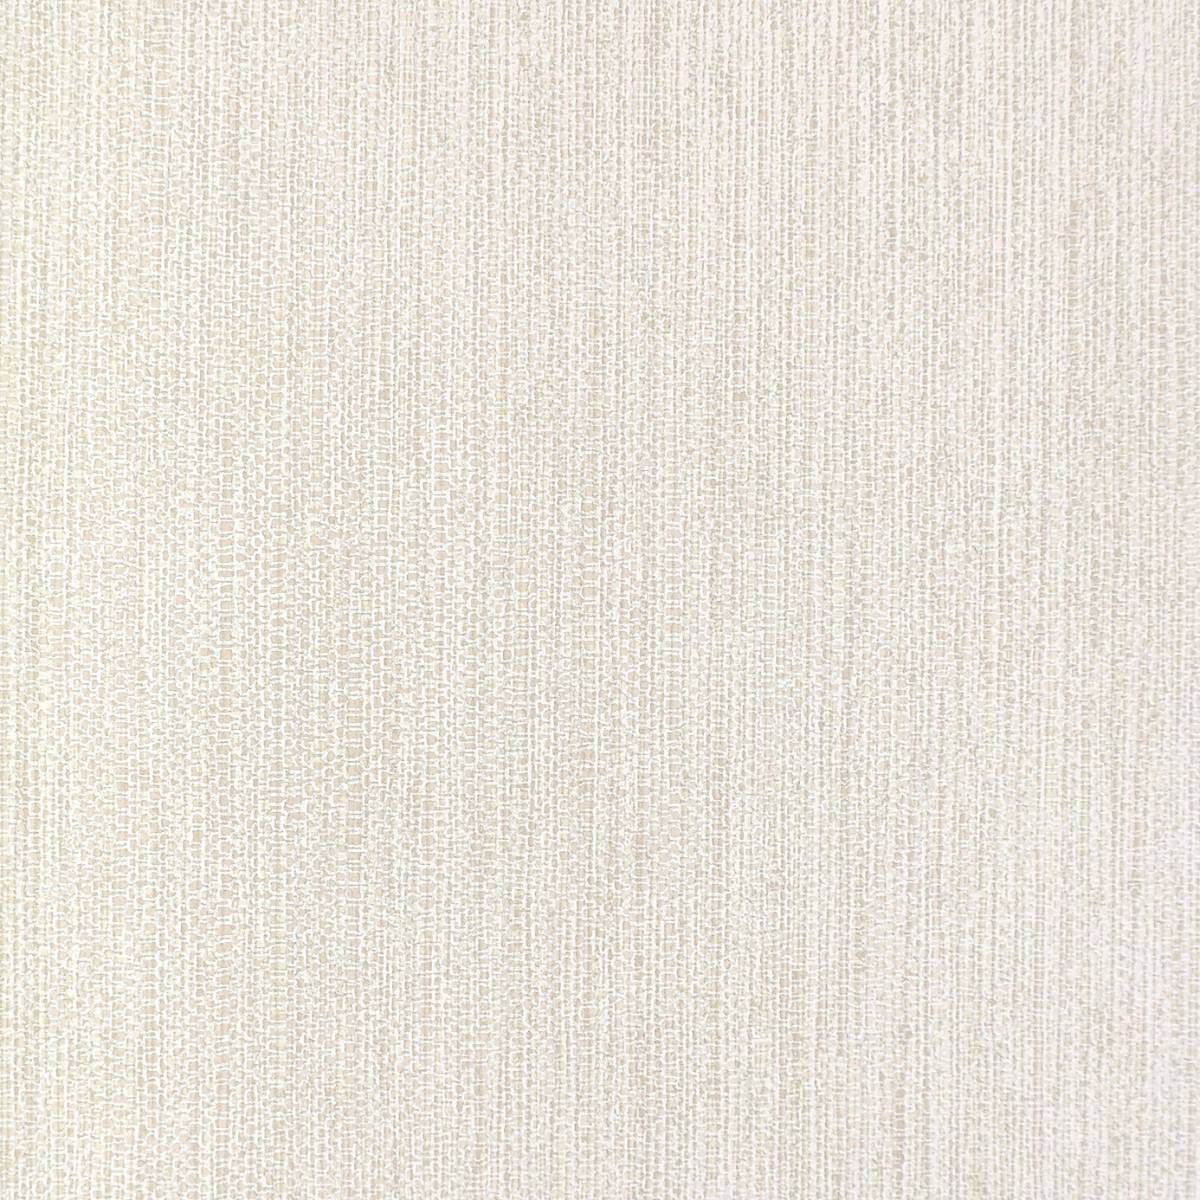 Gel Wallpaper Taupe Gel19 Wemyss Textures Wallpapers Afalchi Free images wallpape [afalchi.blogspot.com]